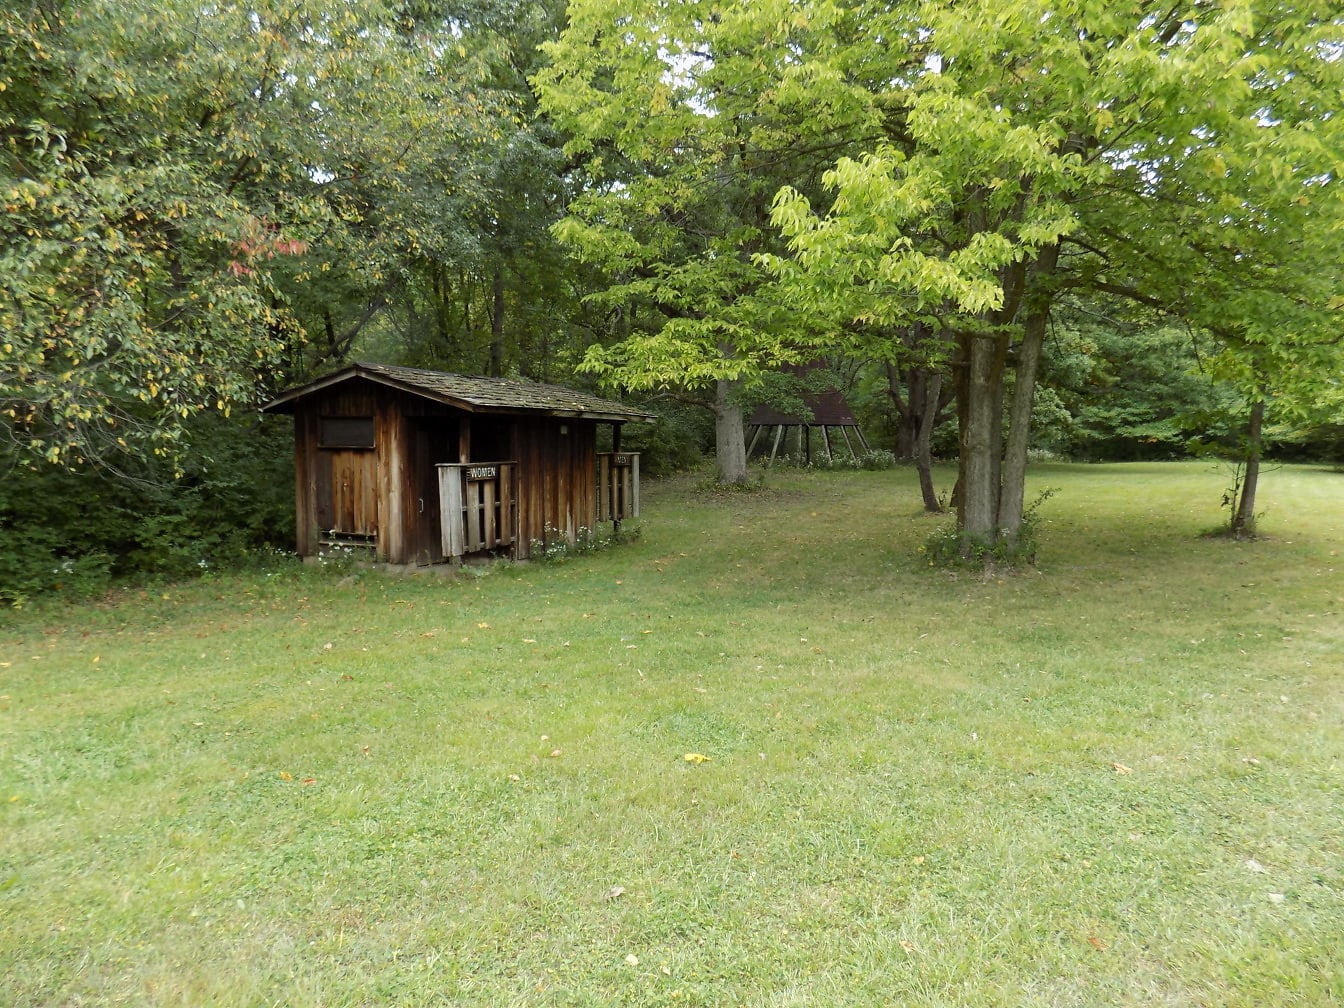 Drewniana toaleta w stodole w starym stylu na podwórku z zielonym trawnikiem